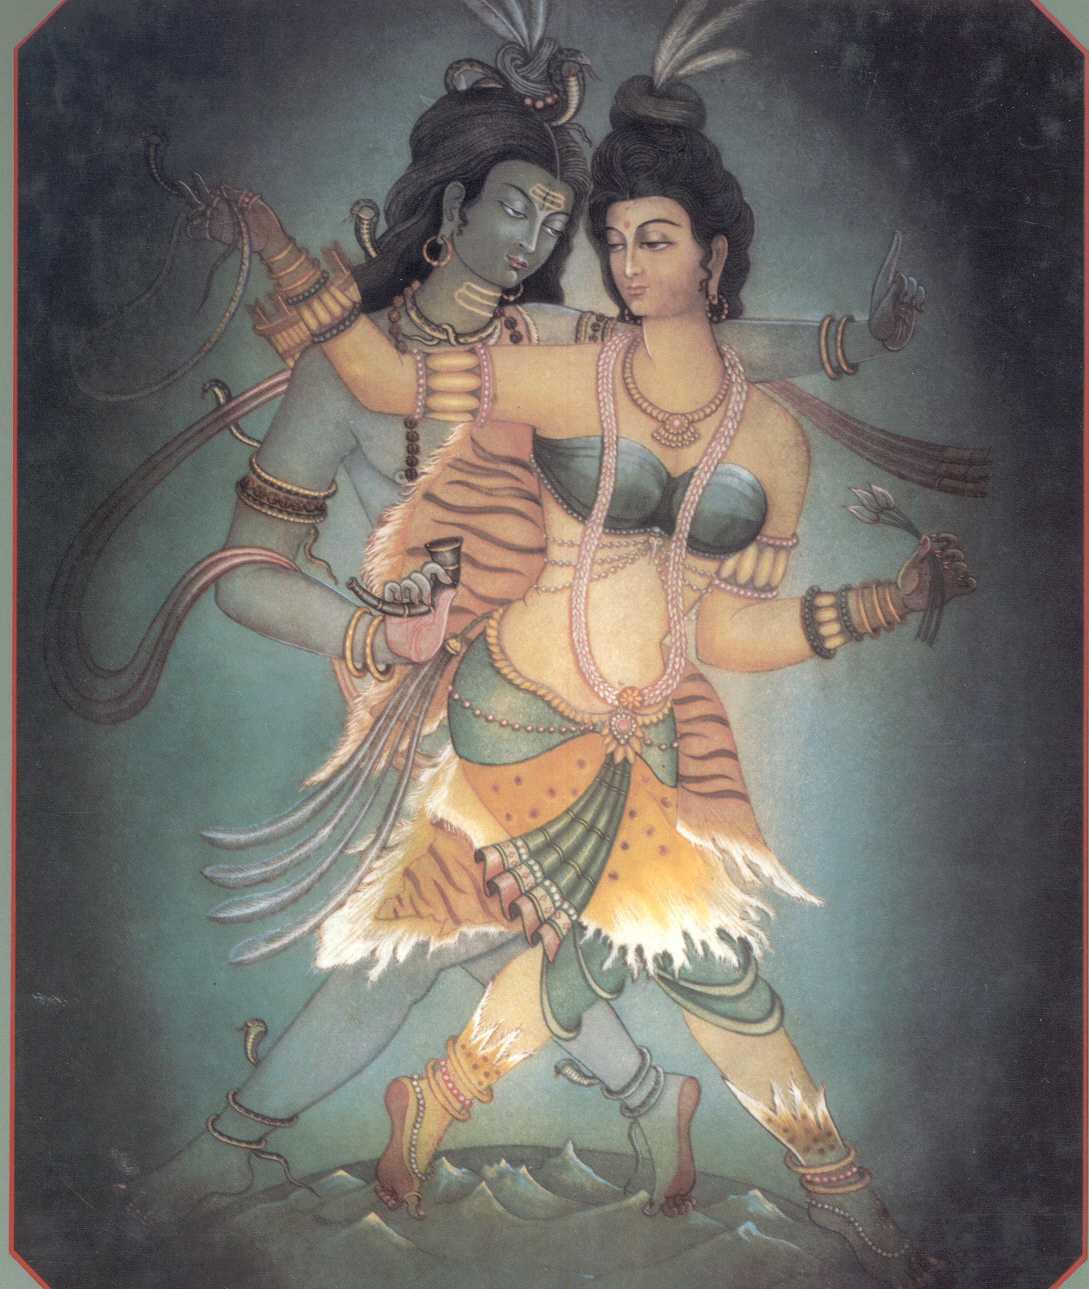 Shiva-Shakti